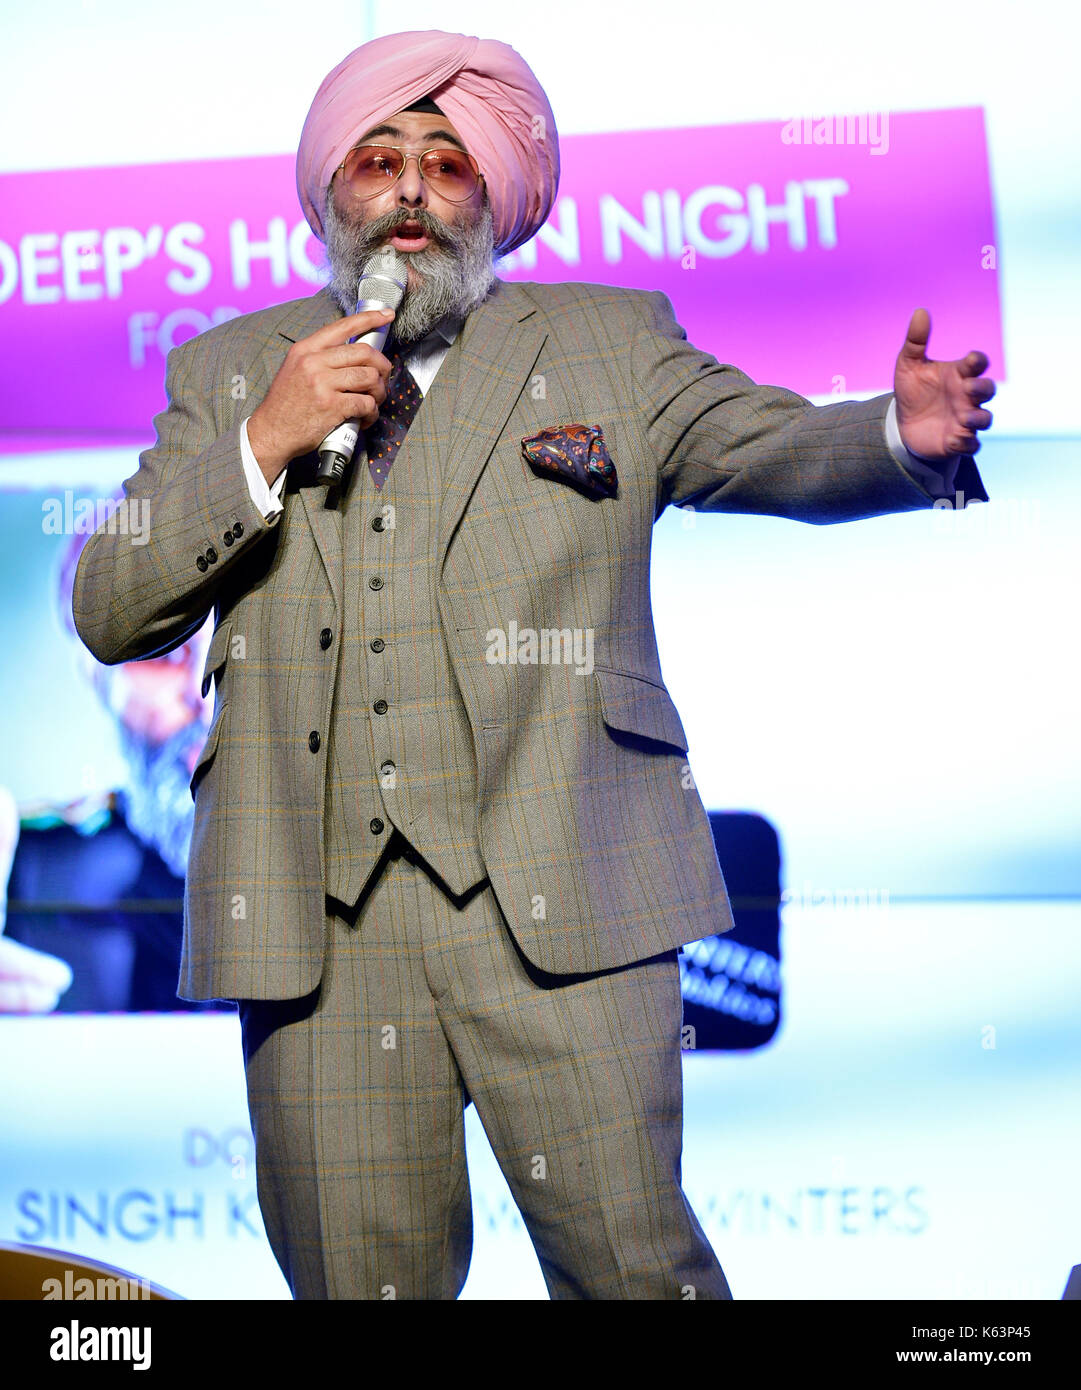 Hardeep Singh kohli comédien sur scène Banque D'Images